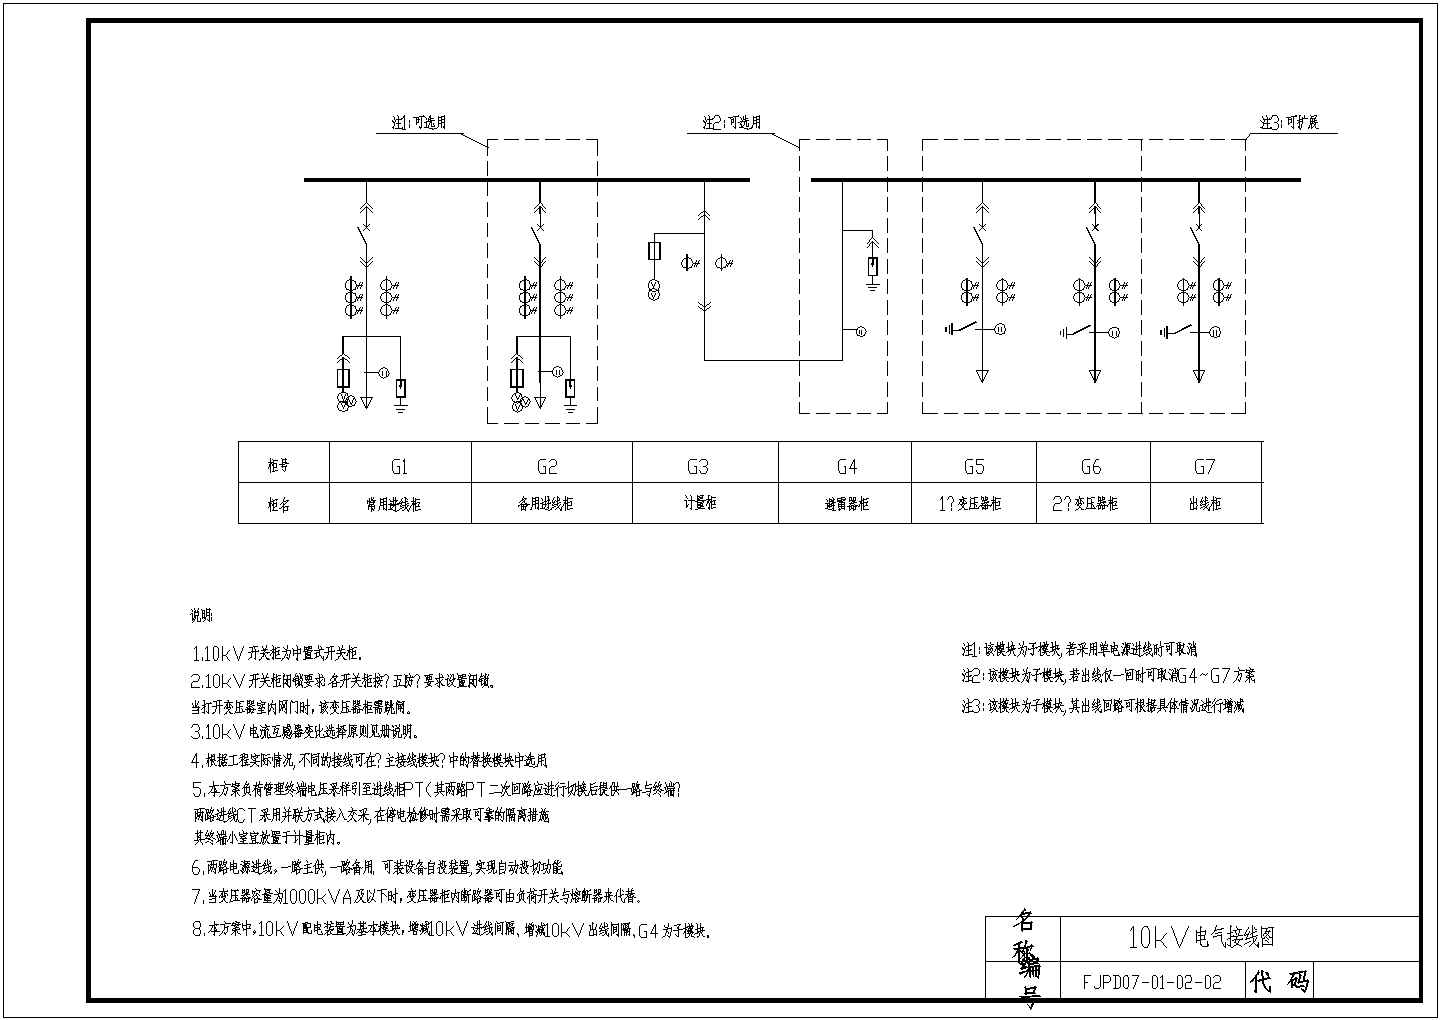 福建省电力公司10kV配电及业扩工程典型设计